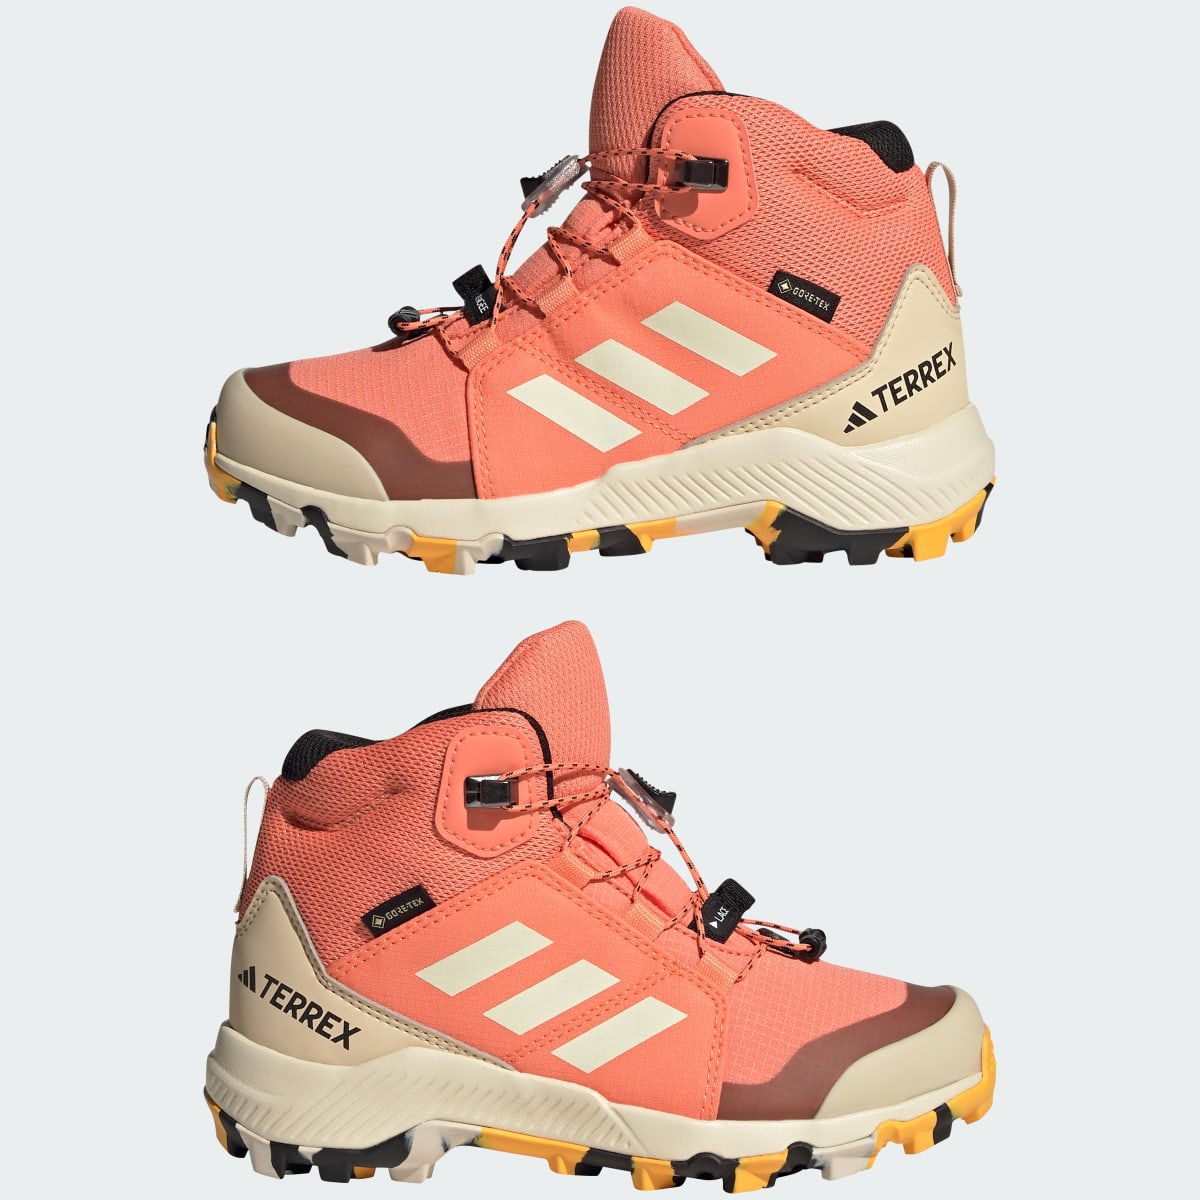 Adidas Sapatilhas de Caminhada GORE-TEX Organiser Mid. 9